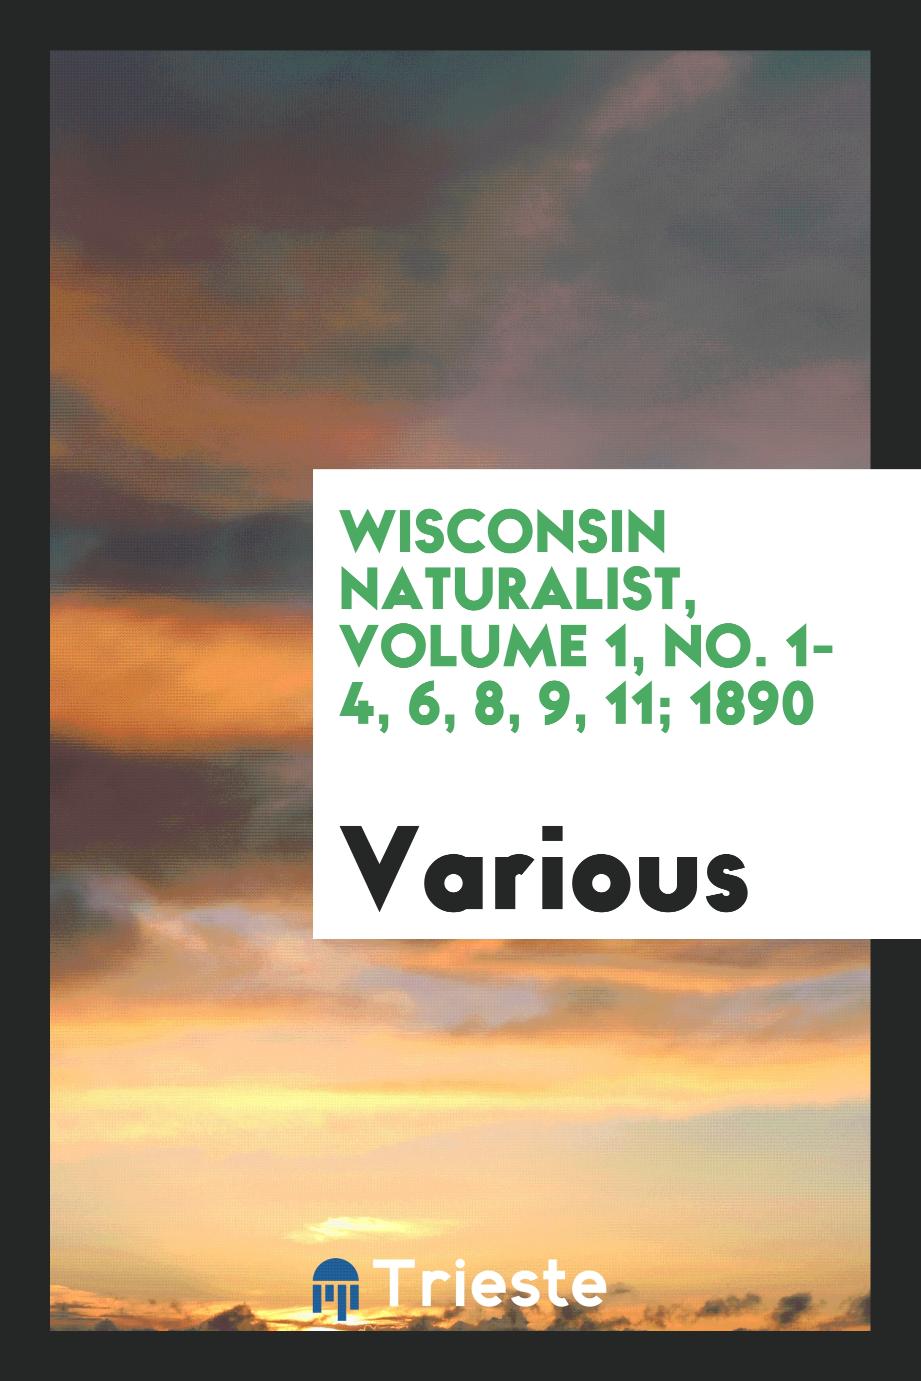 Wisconsin naturalist, Volume 1, No. 1-4, 6, 8, 9, 11; 1890